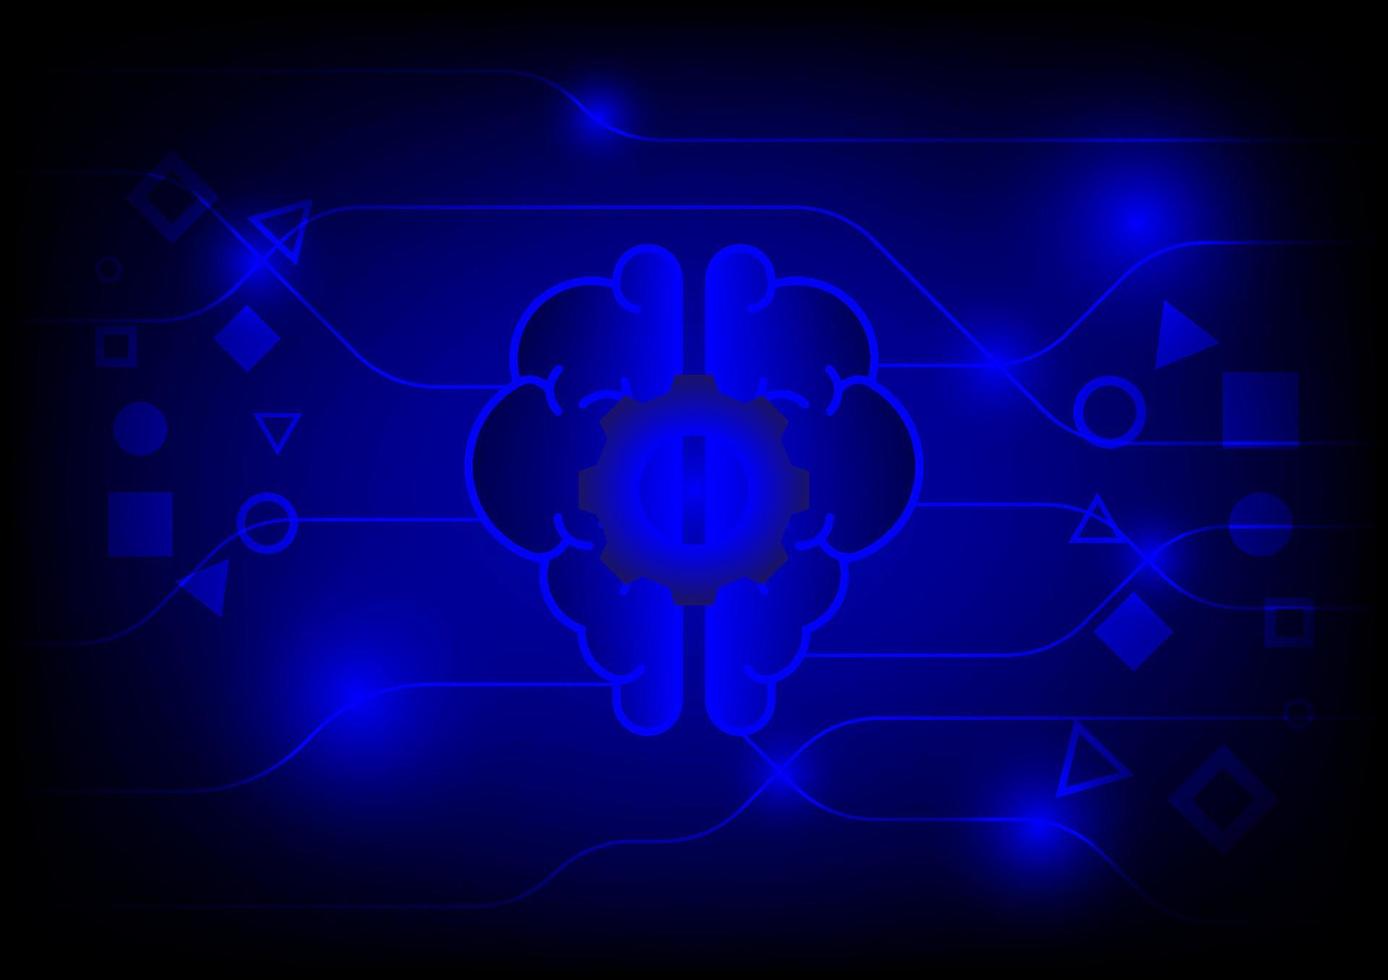 Konzept für digitales Gehirn und künstliche Intelligenz. menschliche gehirnform mit linie auf blauem technologiehintergrund. vektor